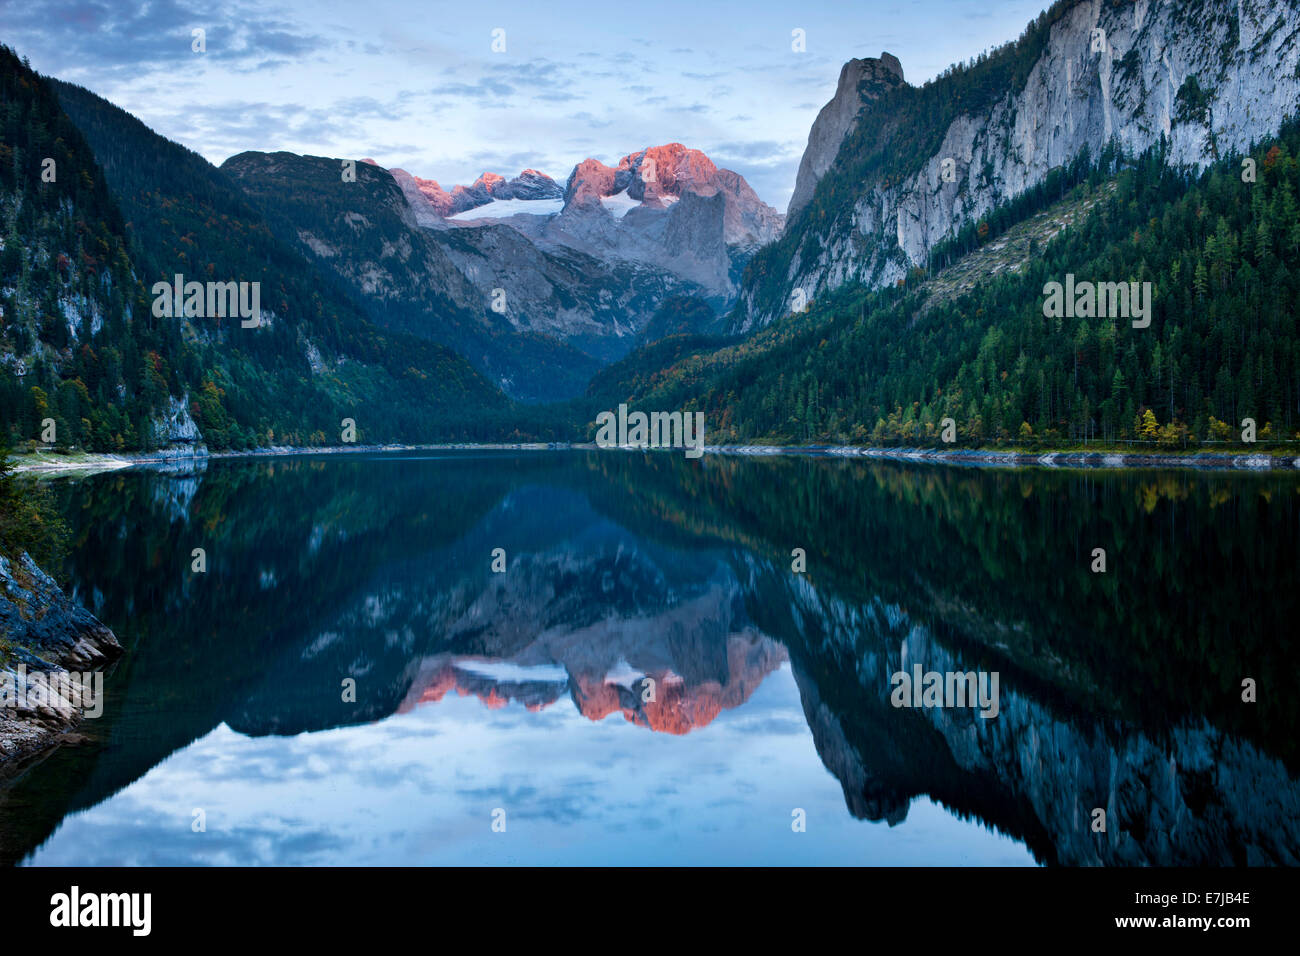 Vorderer Gosausee avec reflet de la montagnes de Dachstein, Hoher Dachstein, Gosau, Salzkammergut, Haute Autriche, Autriche Banque D'Images